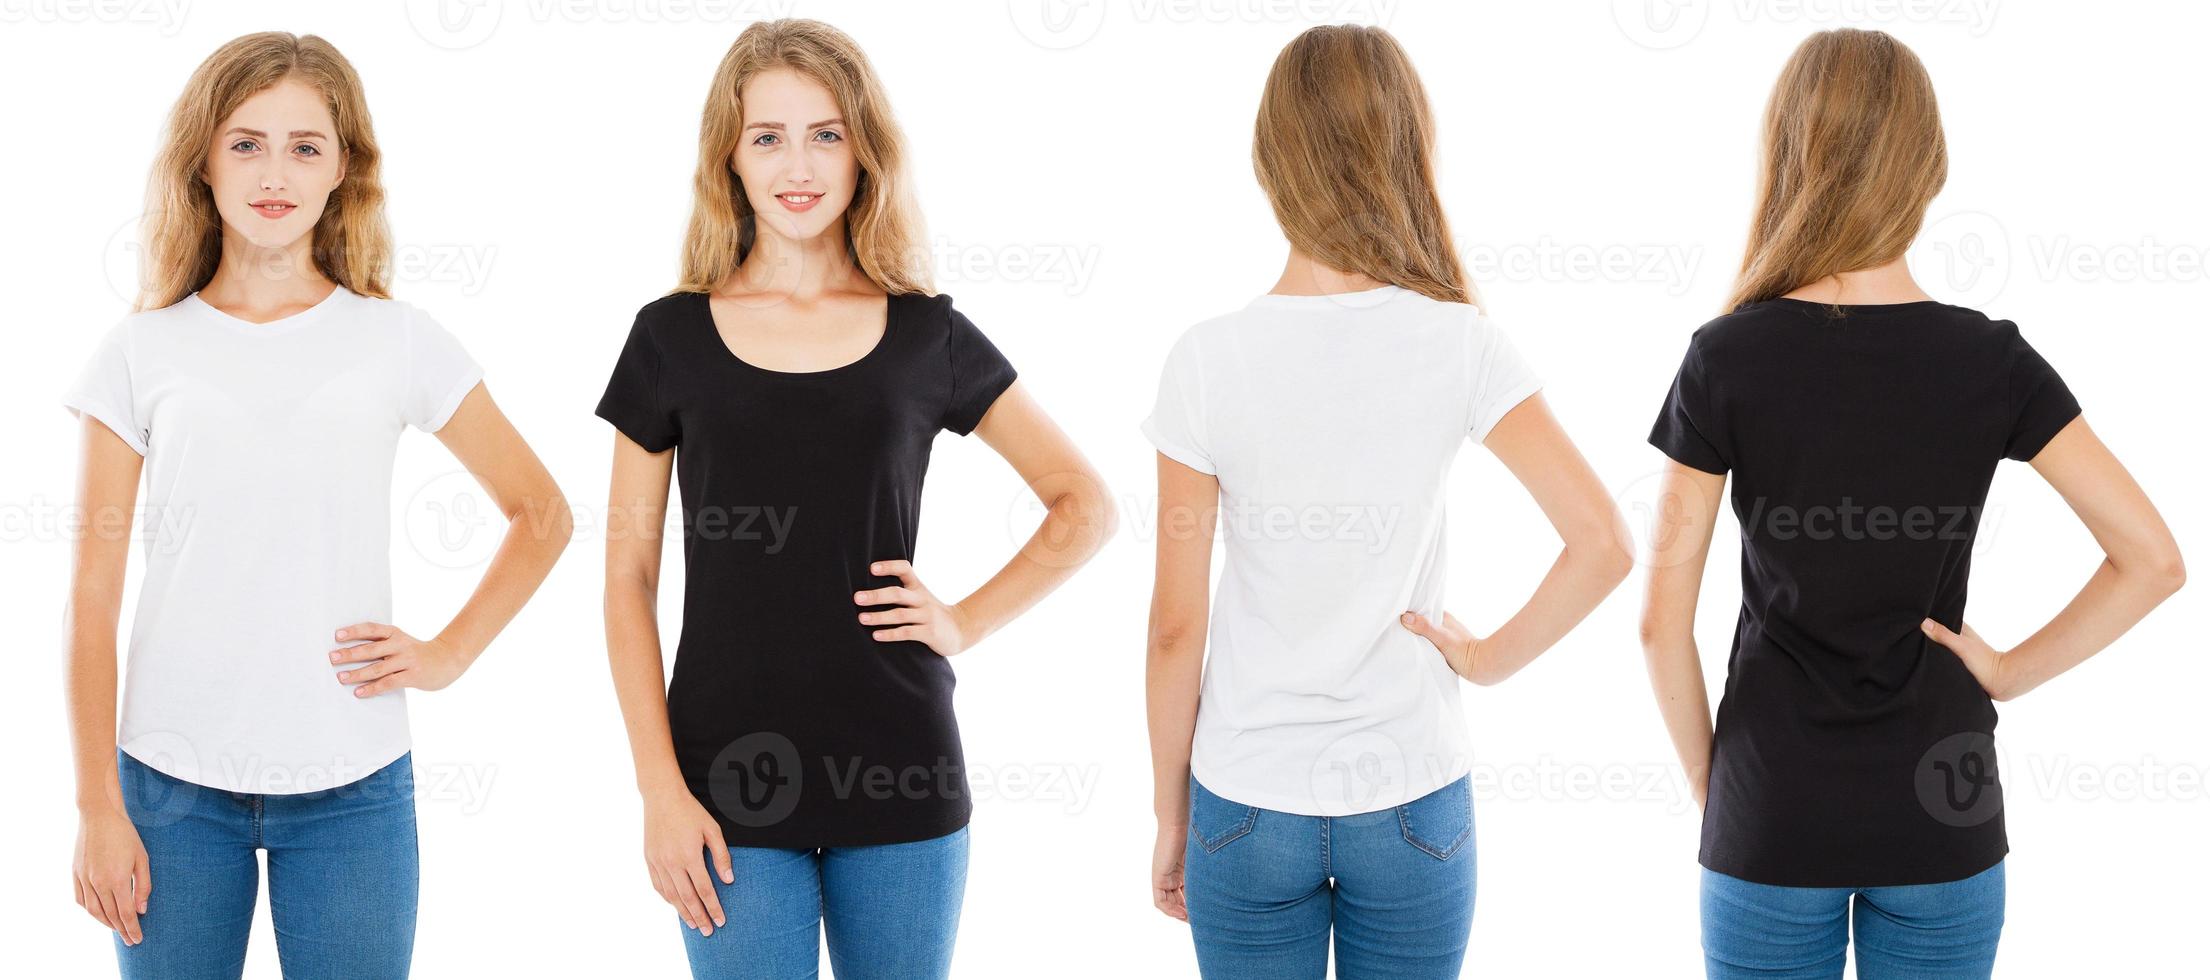 vista frontal e traseira mulher adolescente em camiseta branca e preta isolada, conjunto garota em camiseta, duas mulheres foto